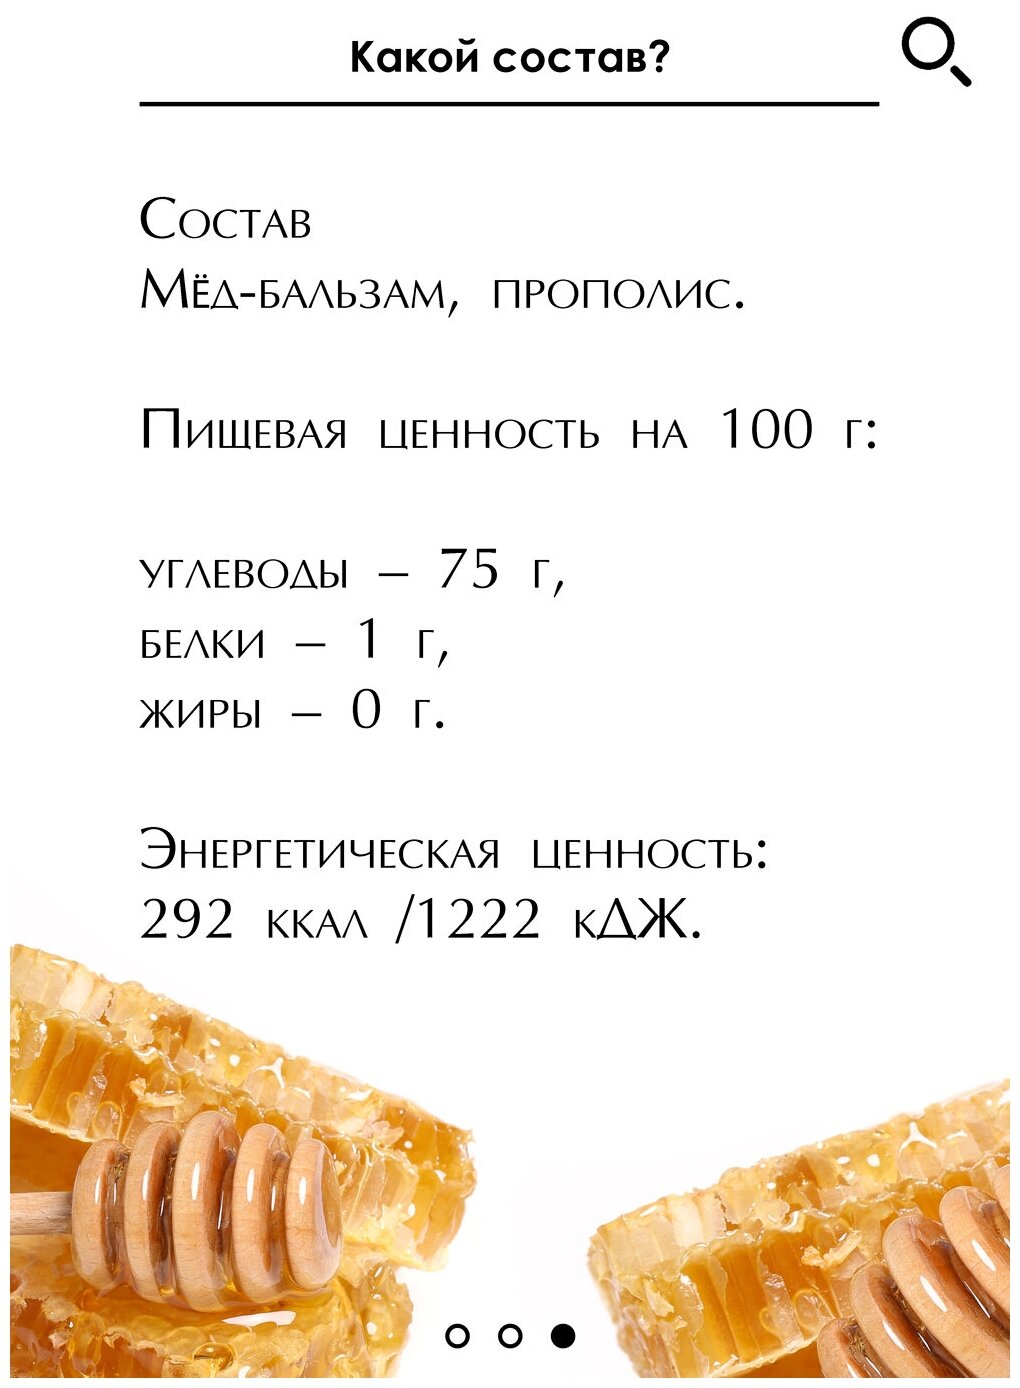 Медовый пробиотик с прополисом, "Кавказский целитель" 30 г, нормализует работу ЖКТ, помогает усваивать еду, мед натуральный - фотография № 4